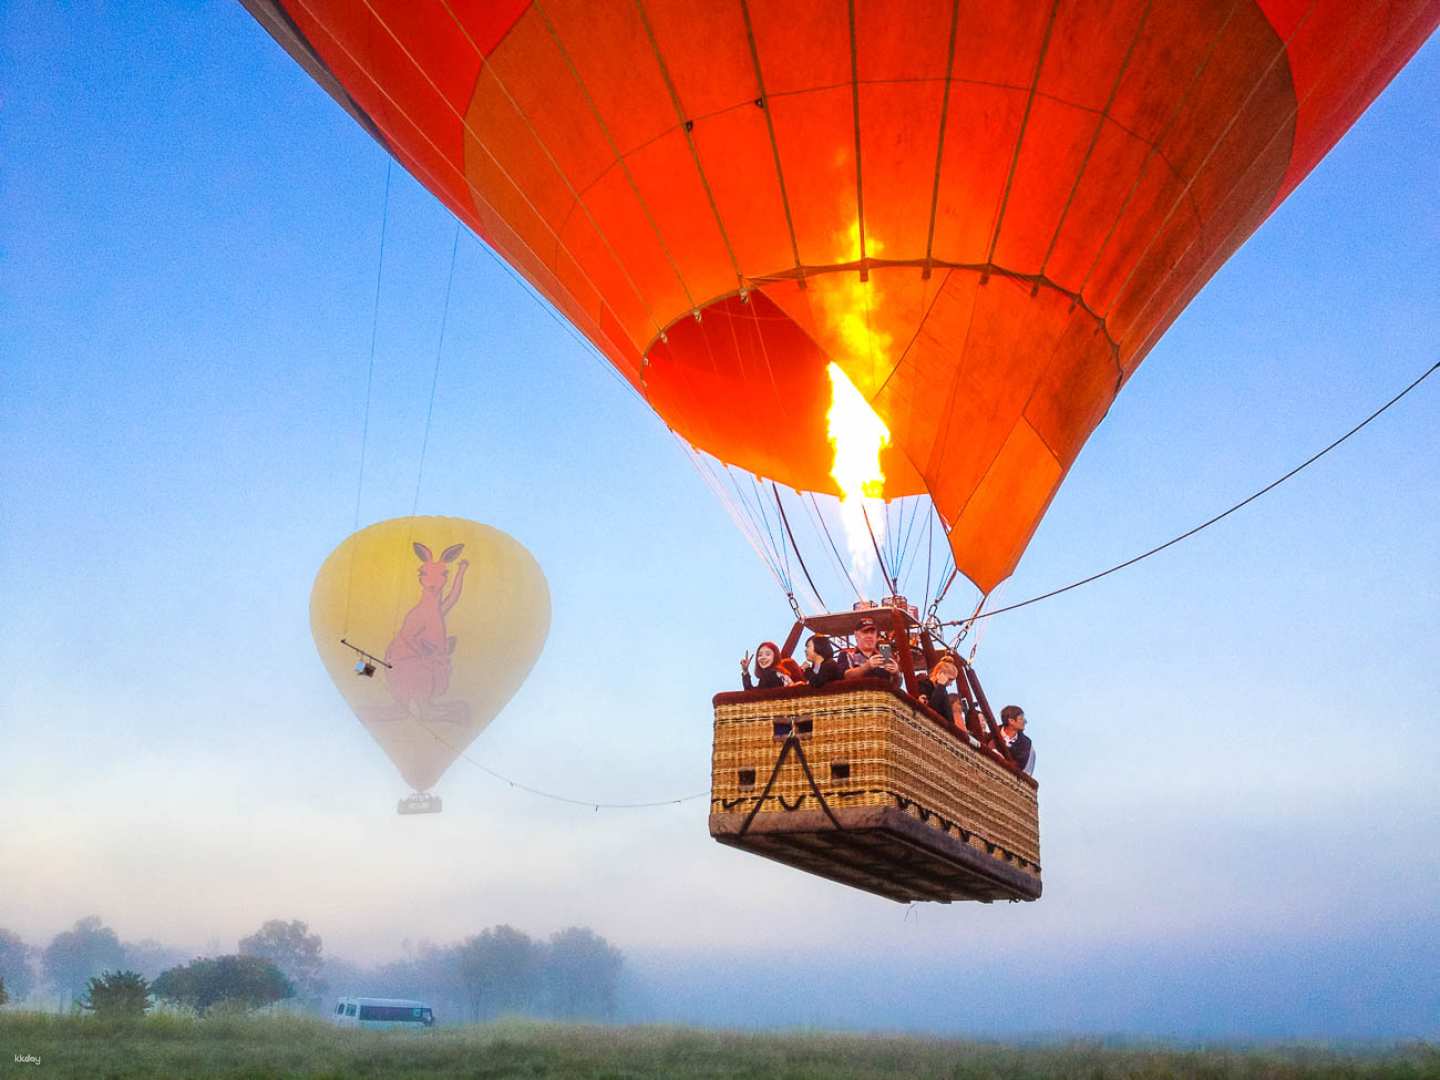 澳洲-凱恩斯經典熱氣球飛行體驗| 含回程接送